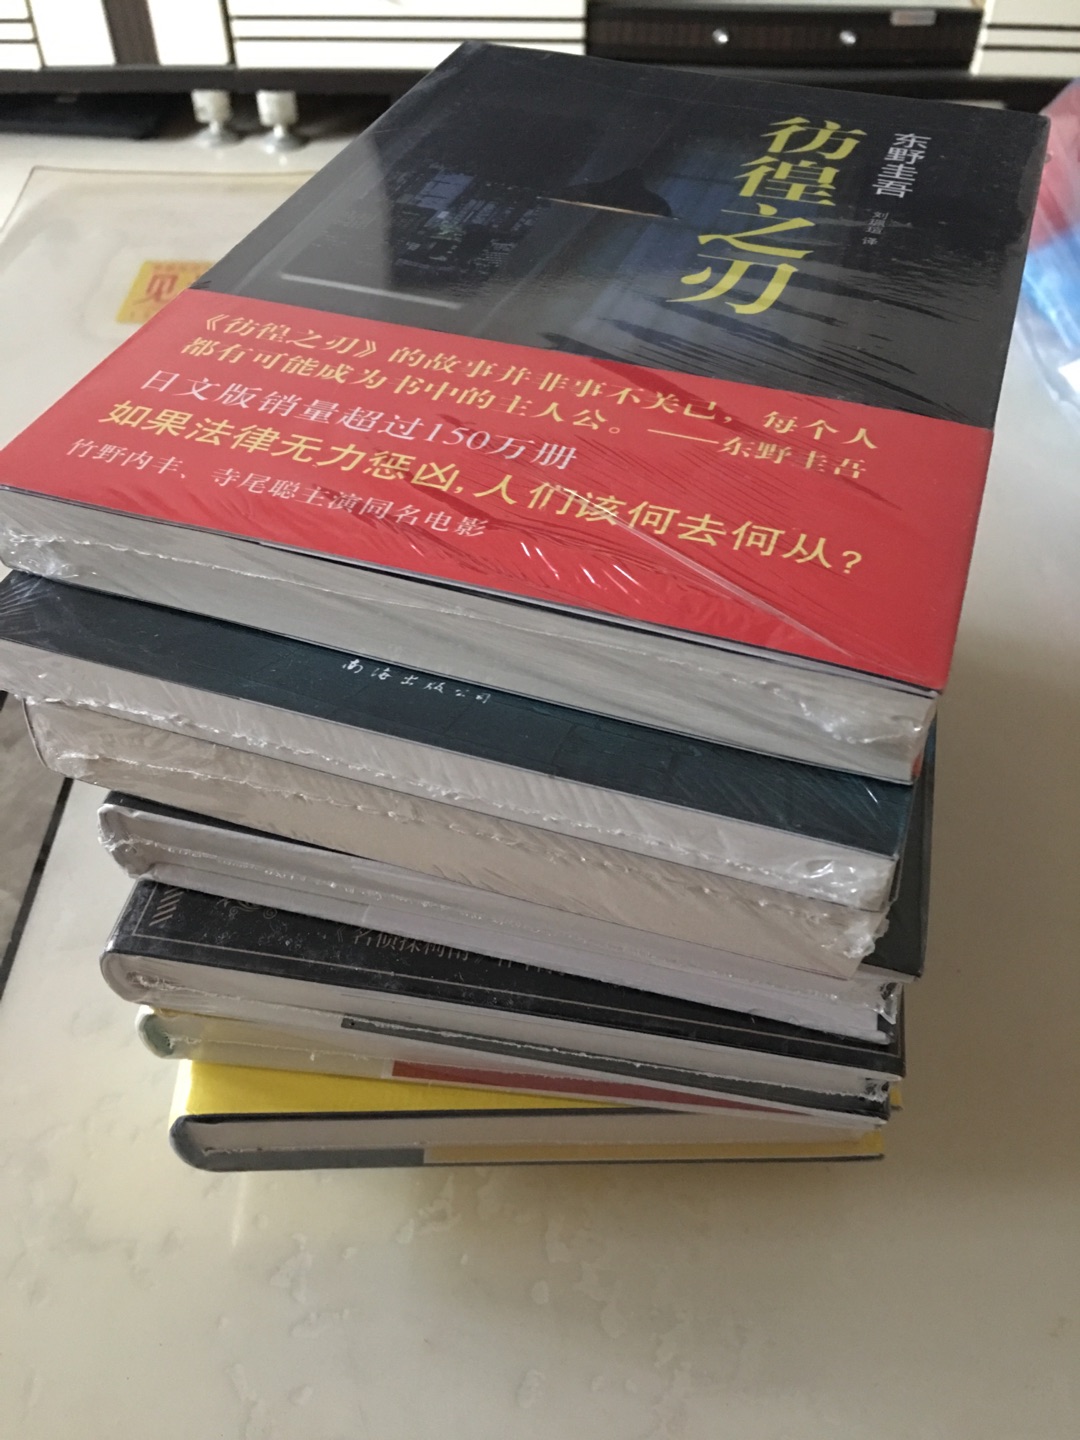 书的质量很好，读着很舒服，很喜欢读东野圭*的小说，搞活动很实惠，一下买了很多，快递也很快，囤着慢慢看。